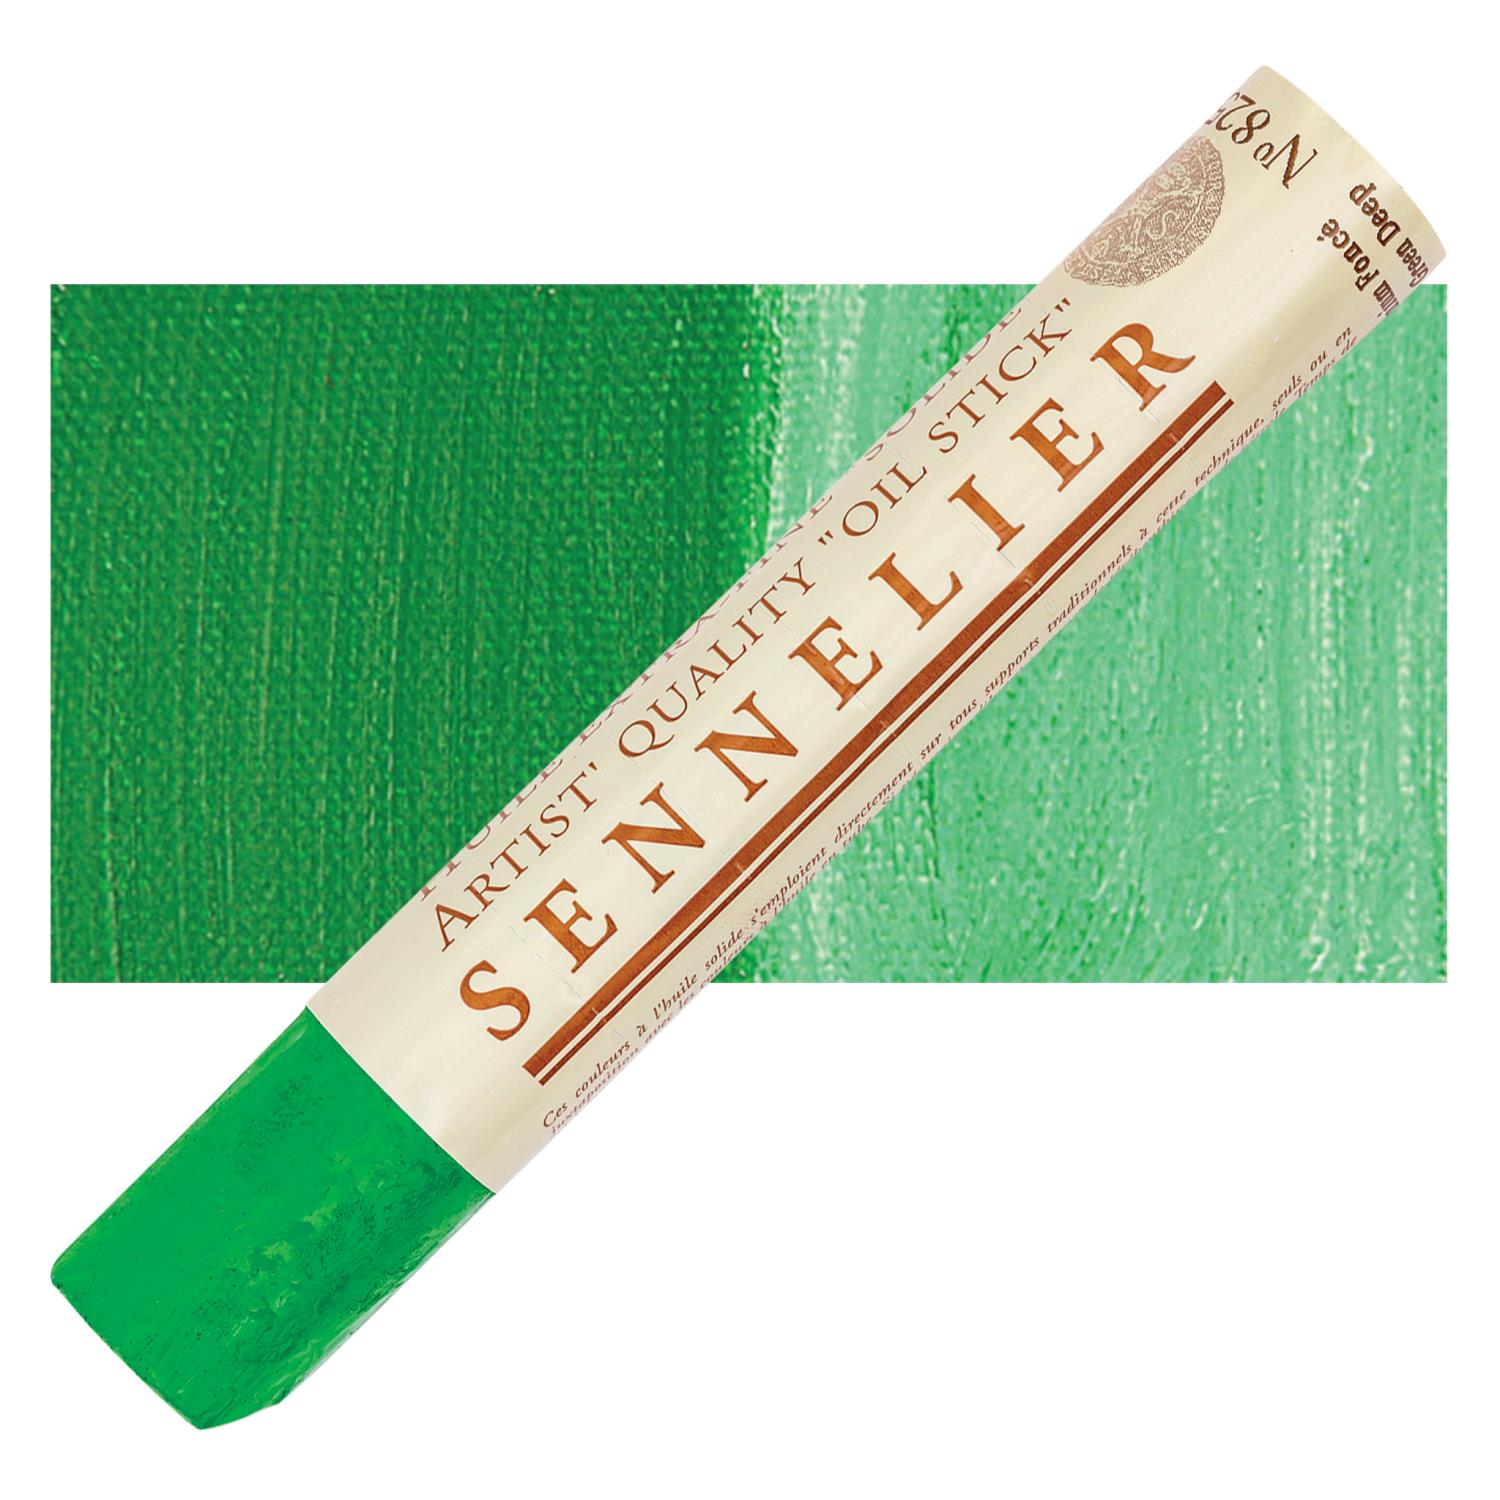 Sennelier Artist Oil Stick 38ml - 825 Cadmium Green Deep S2 utgår